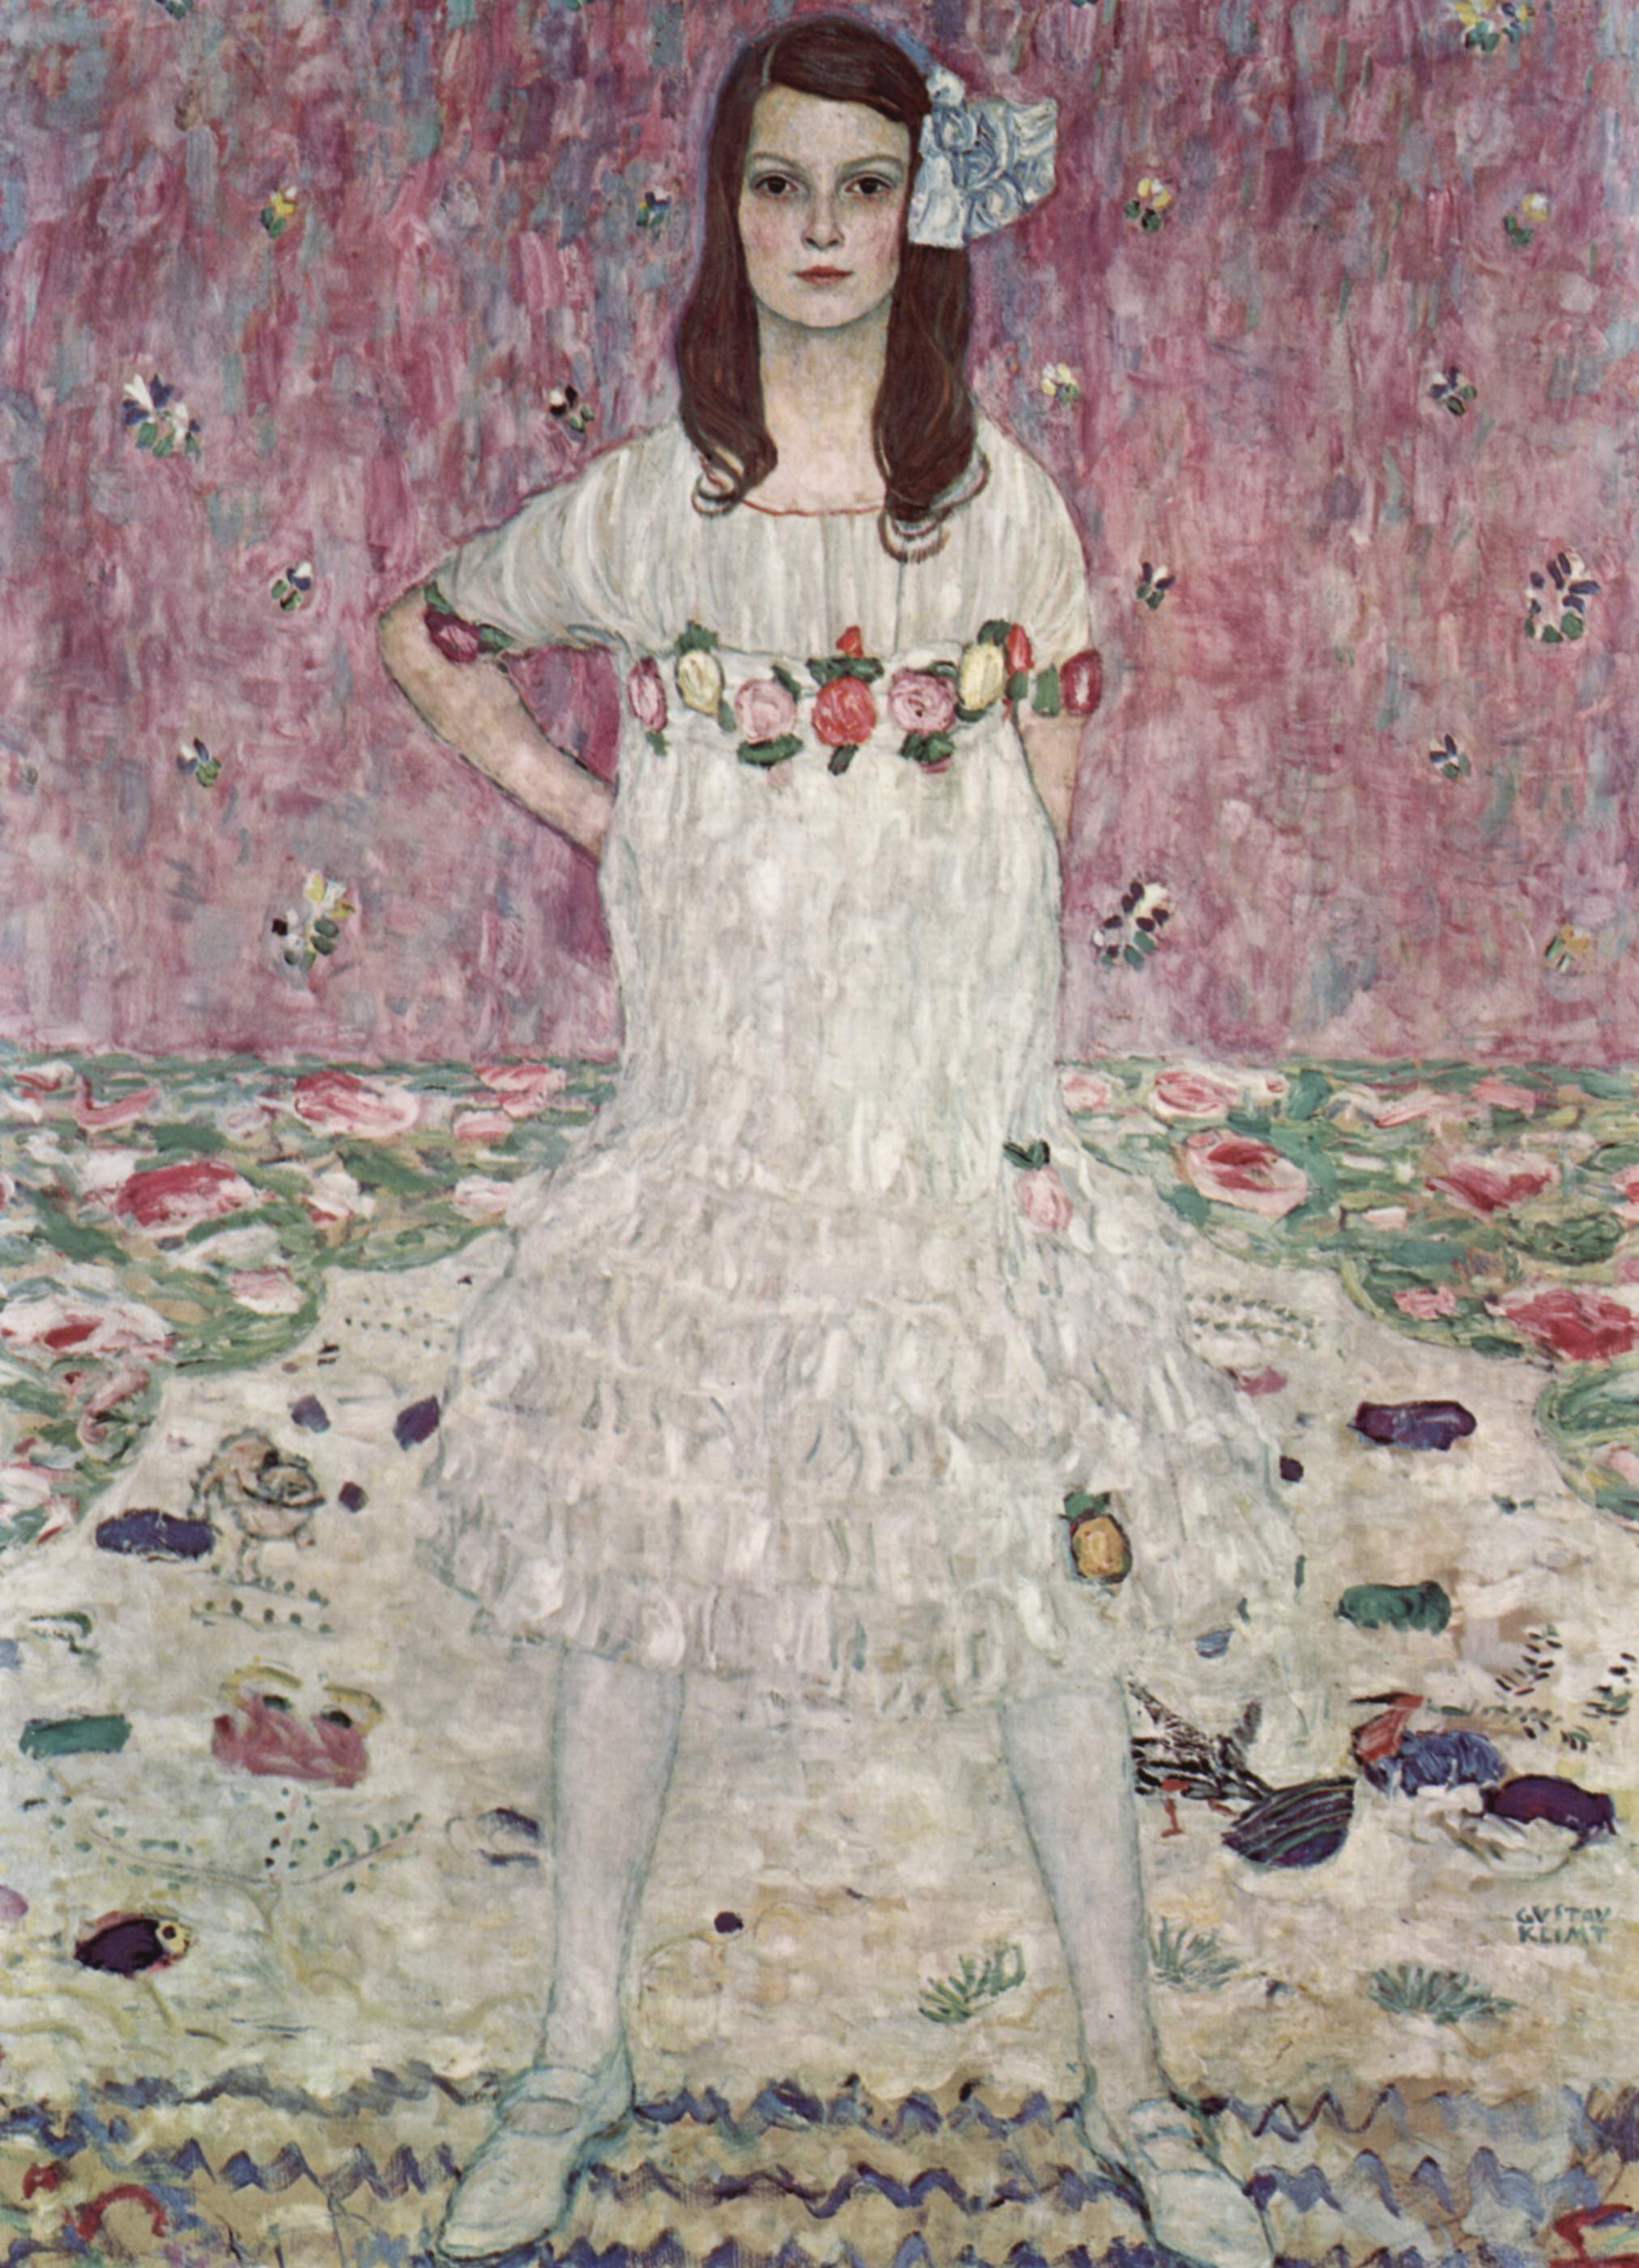 玛丹·普利马威西 by 古斯塔夫· 克林姆特画 - 1912 - 149.9 × 110.5 cm  